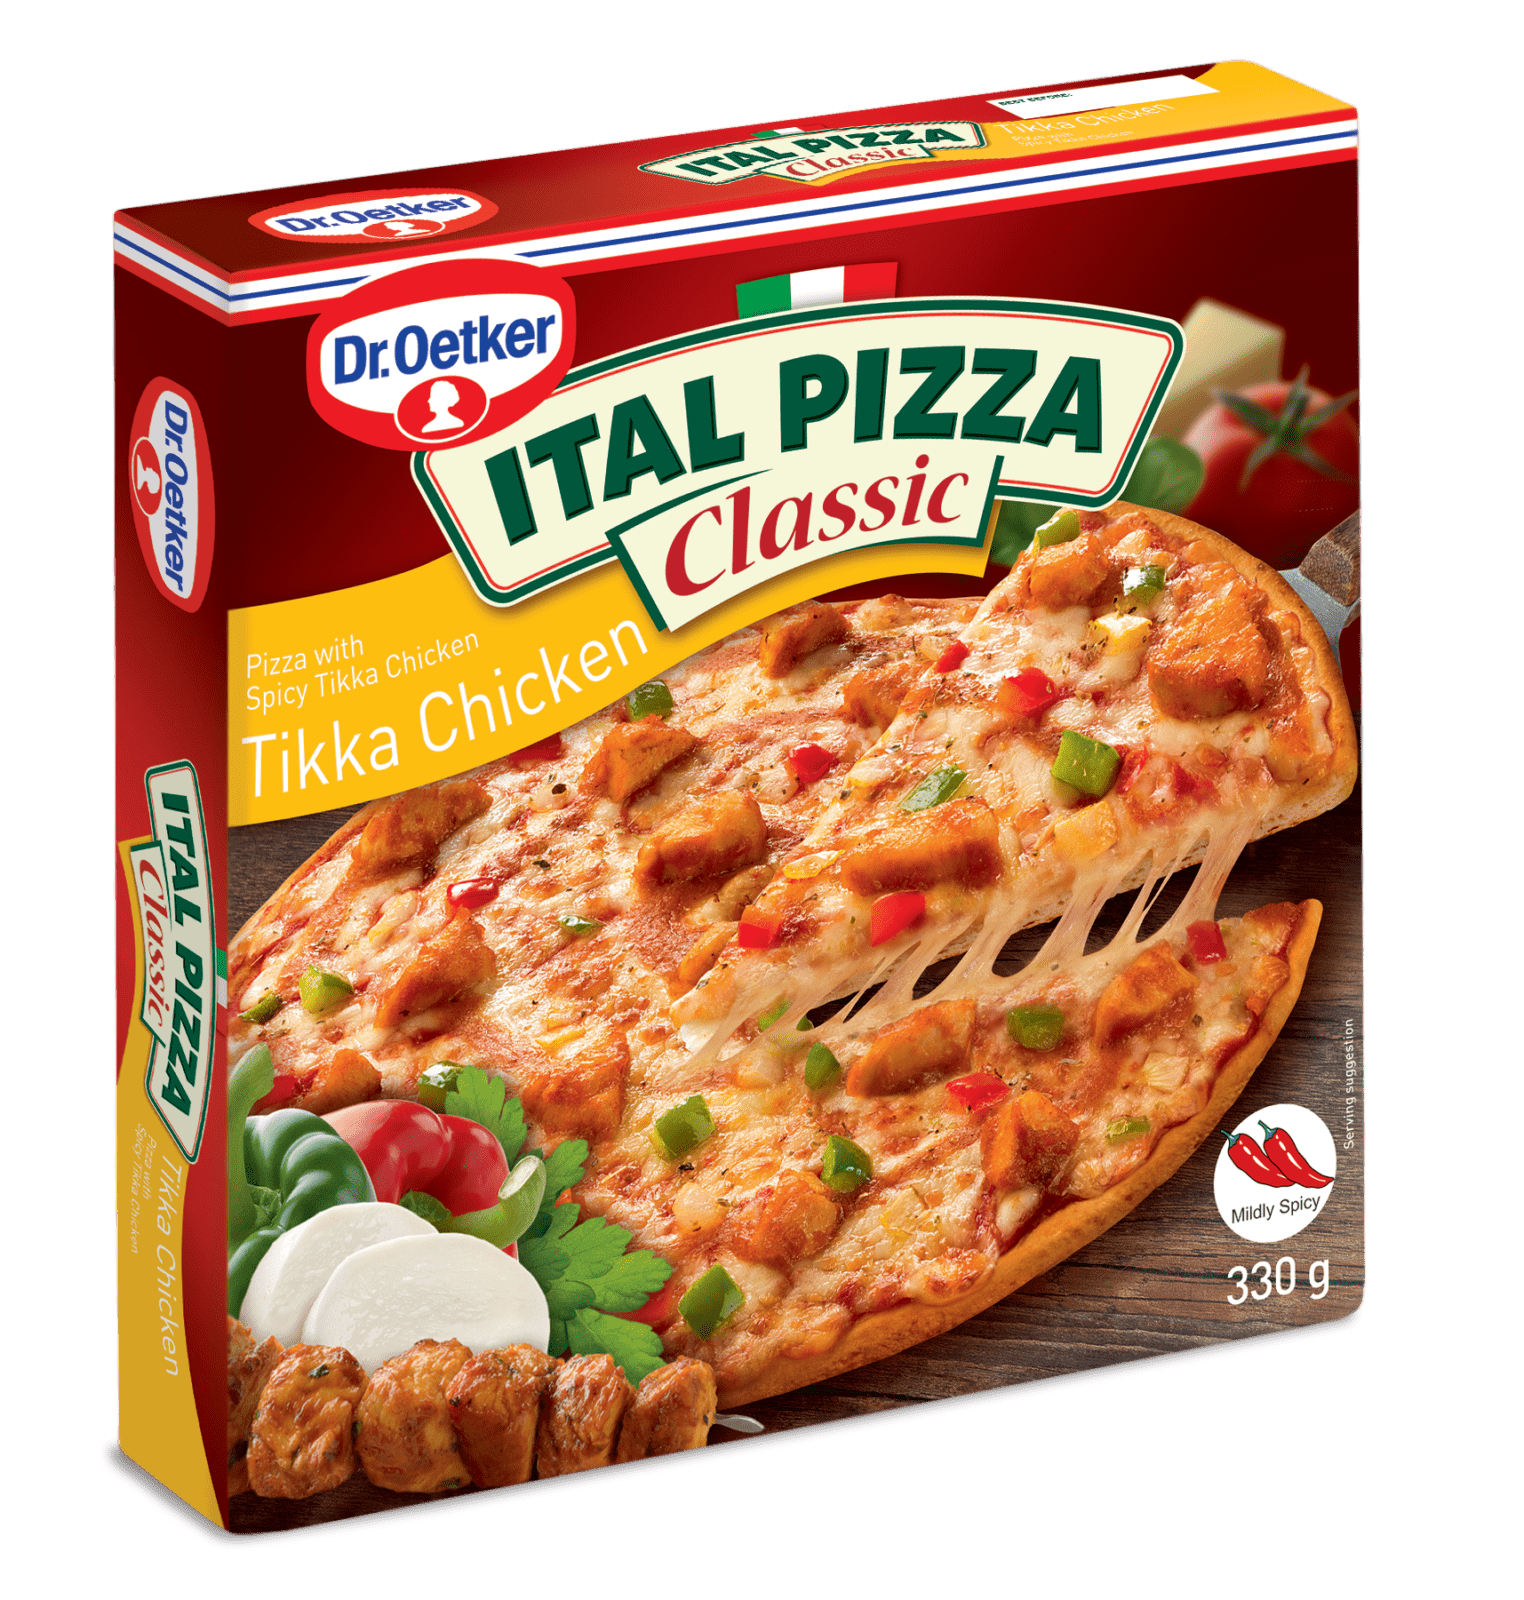 ItalPizza_Classic_TikkaChicken